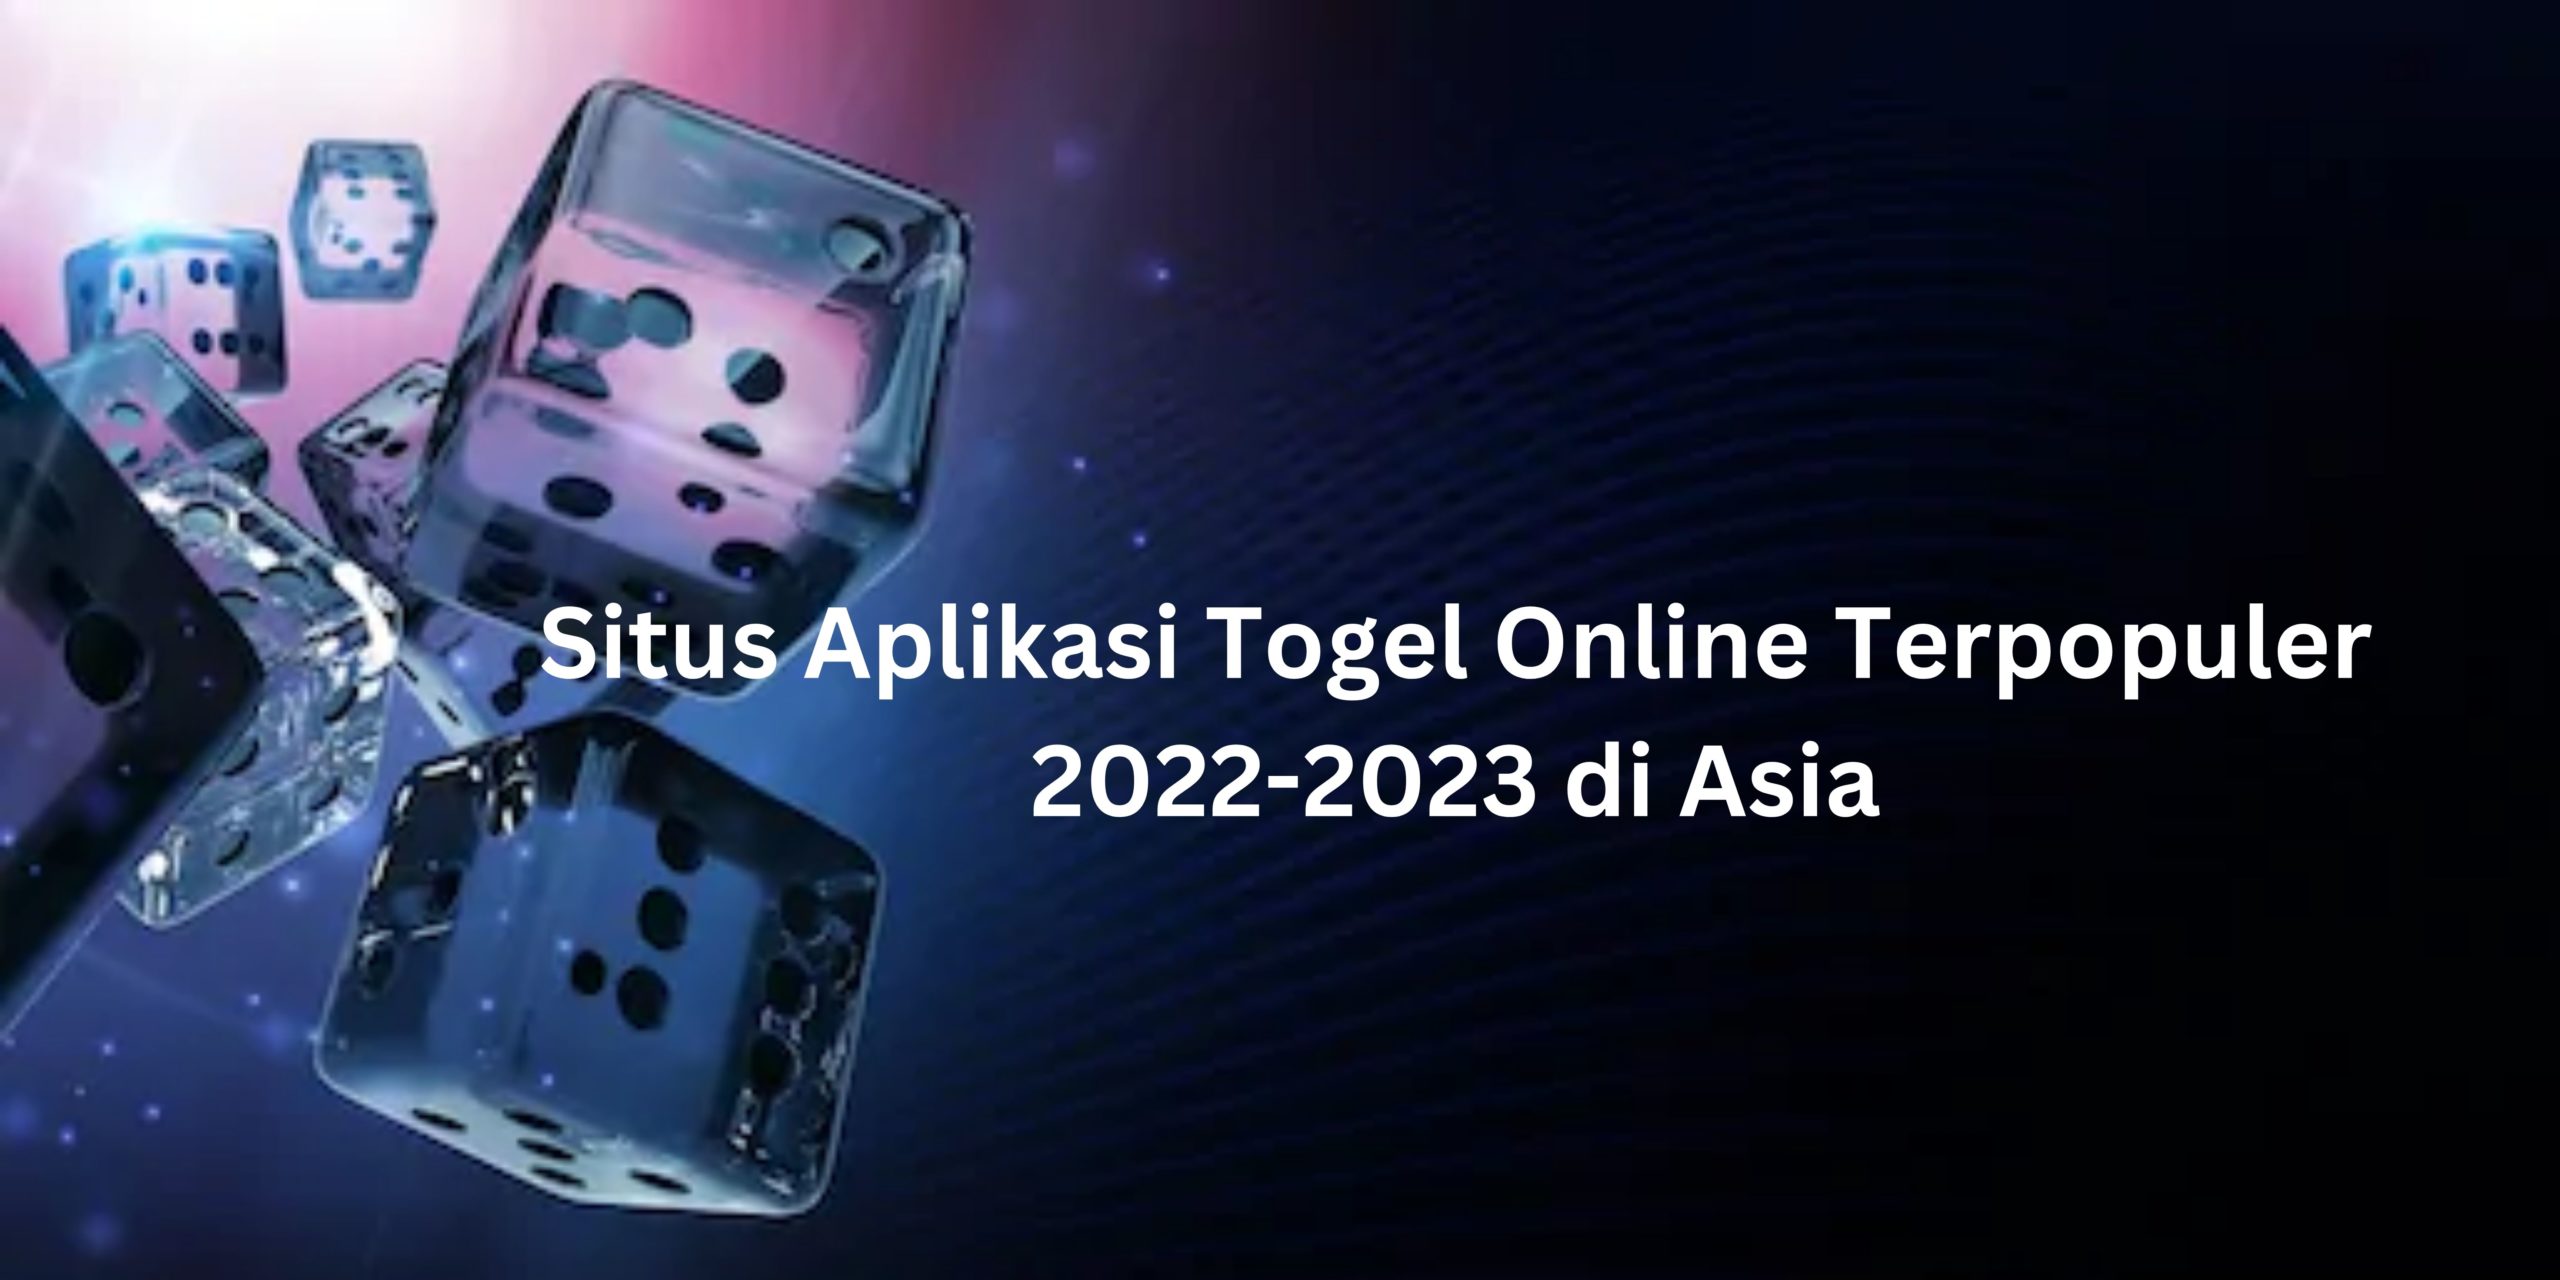 Situs Aplikasi Togel Online Terpopuler 2022-2023 di Asia